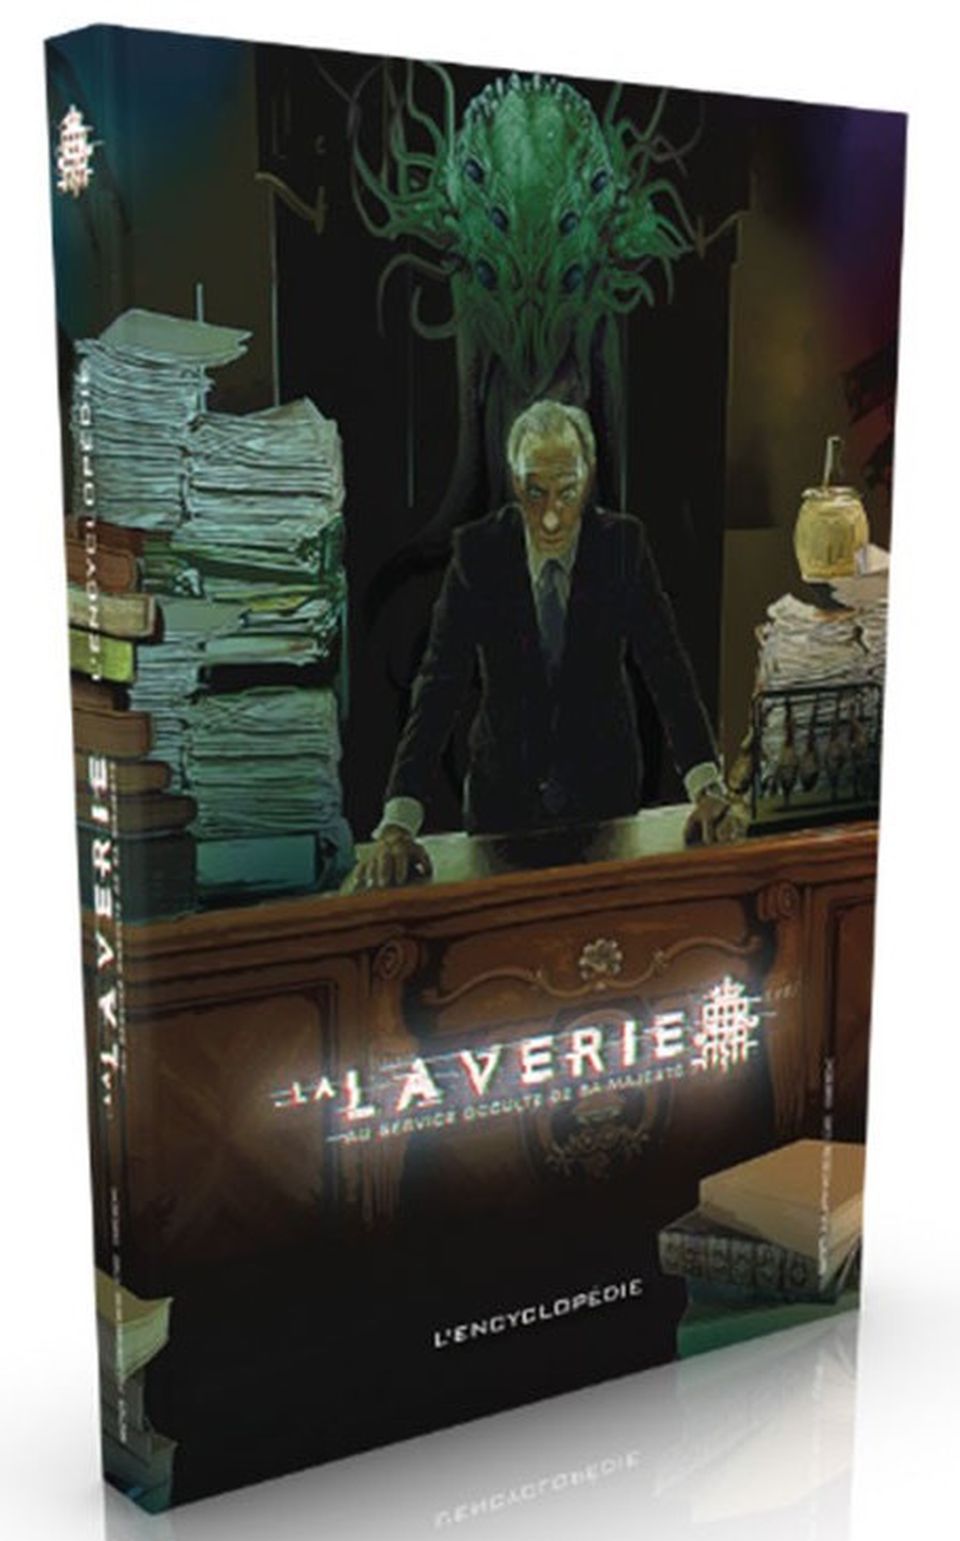 La Laverie : L'encyclopédie, Les dossiers de La Laverie image